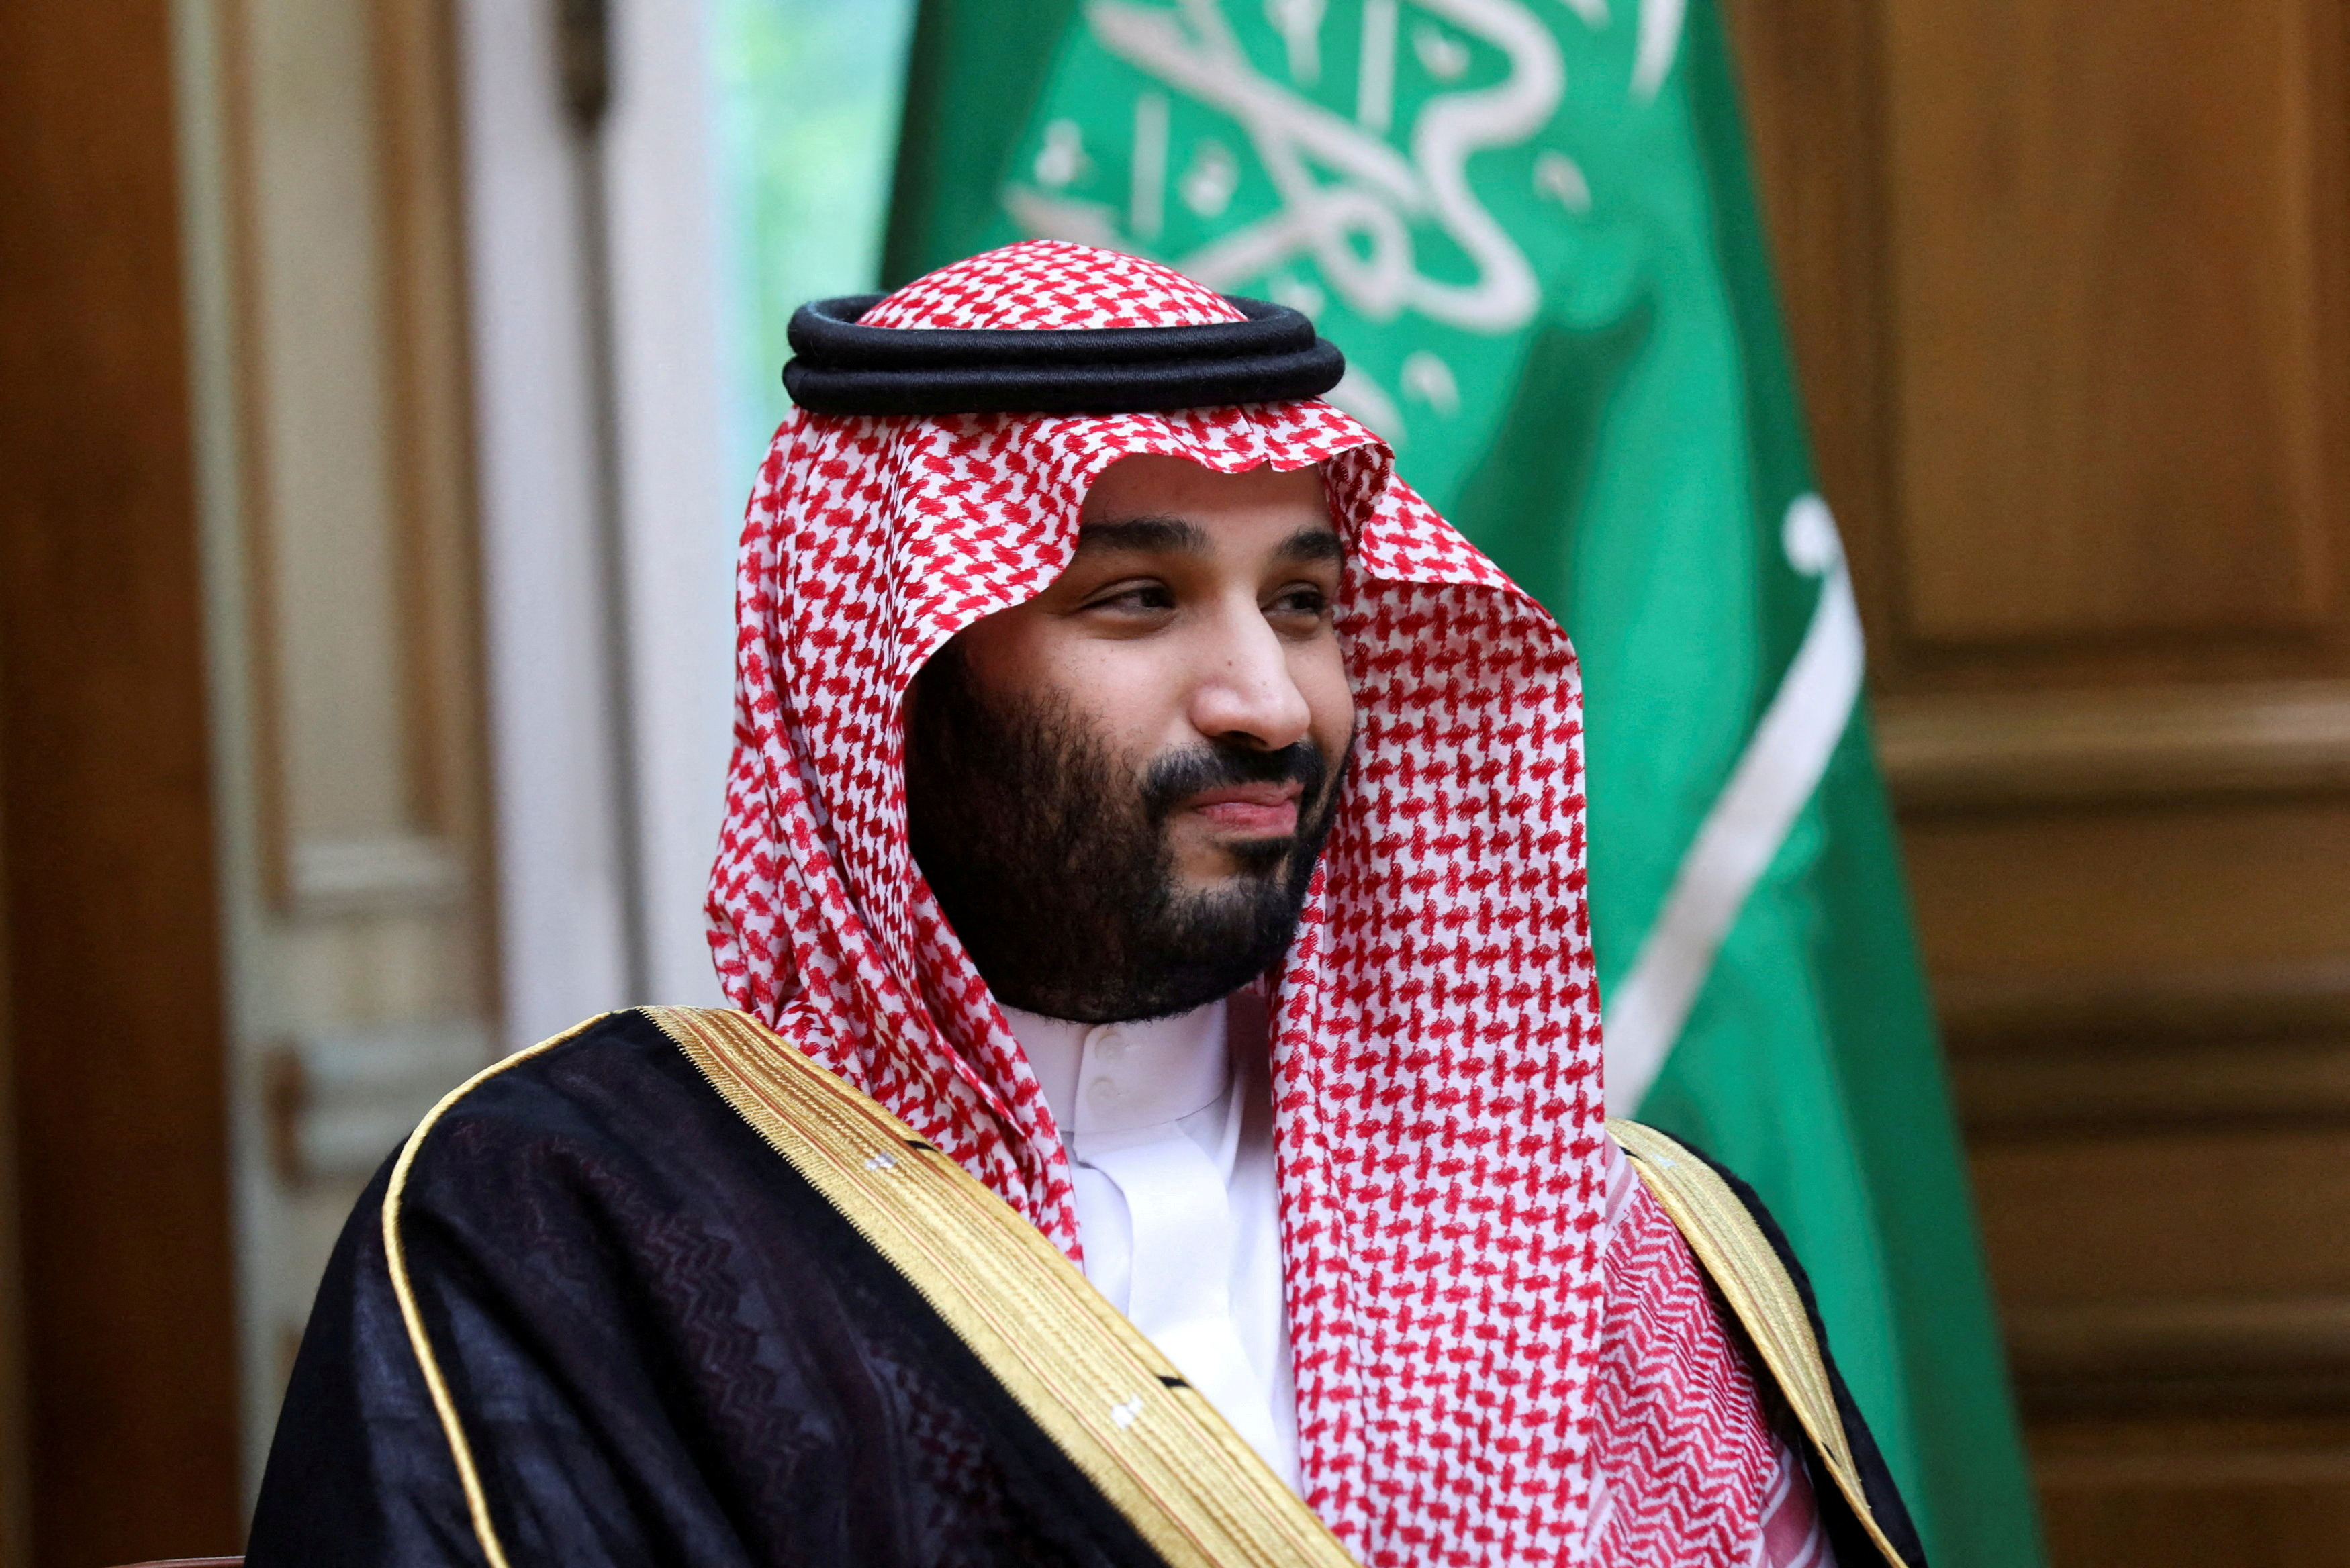 Vị trí chính trị của Thái tử Mohammed bin Salman tại quốc kỳ Ả Rập Xê Út
Thái tử Mohammed bin Salman là một trong những nhân vật chính trị quan trọng tại quốc kỳ Ả Rập Xê Út, với nhiều đóng góp tích cực cho sự phát triển của đất nước này. Năm 2024, ông đang tiếp tục thúc đẩy nhiều chính sách mới nhằm cải thiện đời sống người dân và đưa đất nước này trở thành một trong những cường quốc kinh tế hàng đầu trong khu vực.